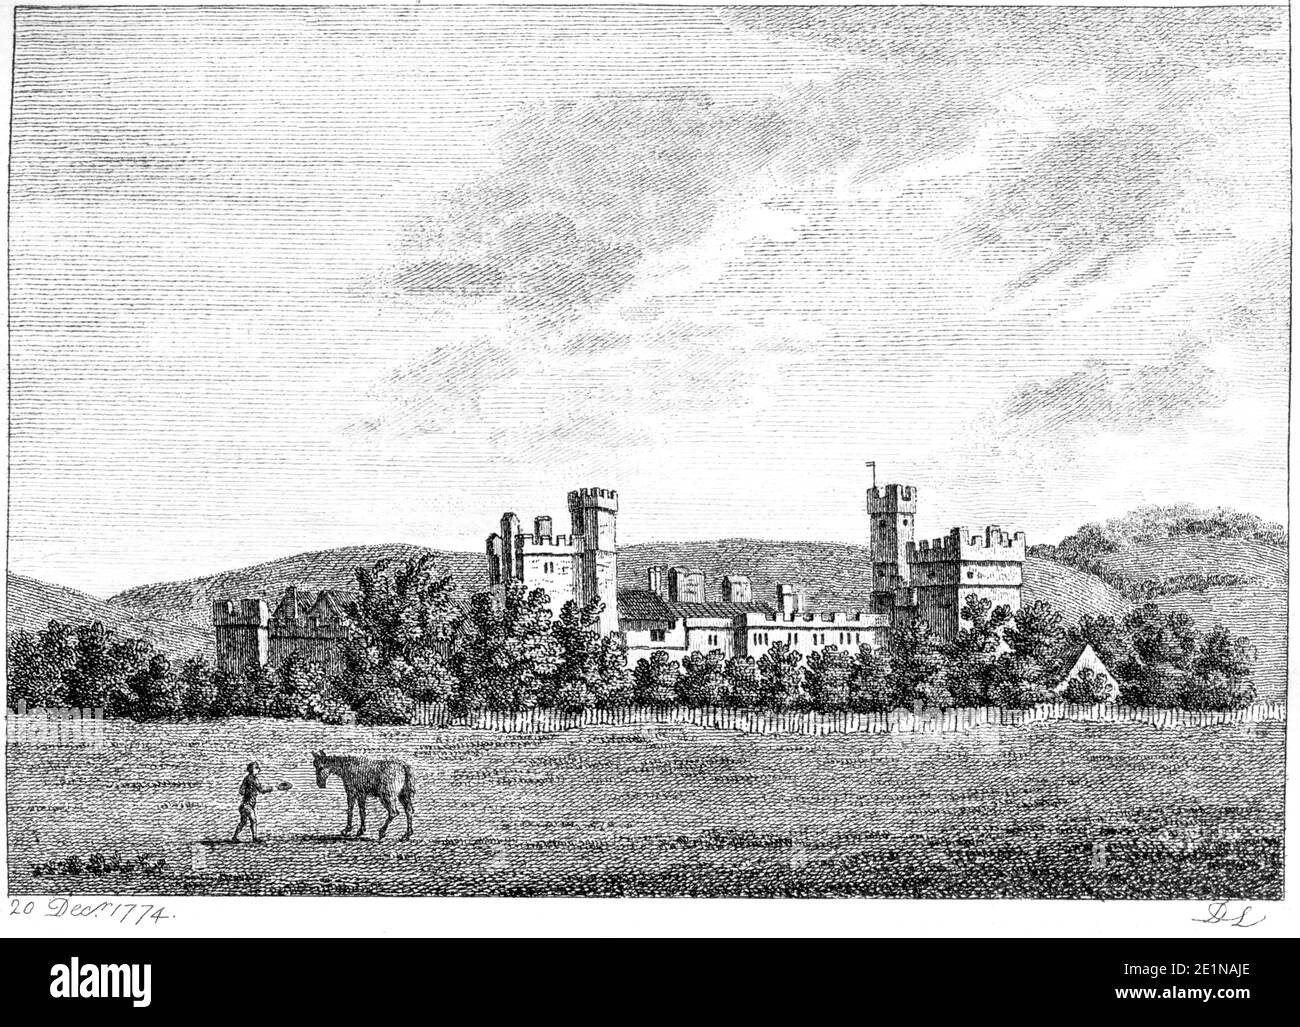 Eine Gravur von Naworth Castle, Cumberland veröffentlicht 20 Dezember 1774 gescannt in hoher Auflösung von einem Buch in den 1770er Jahren veröffentlicht. Stockfoto